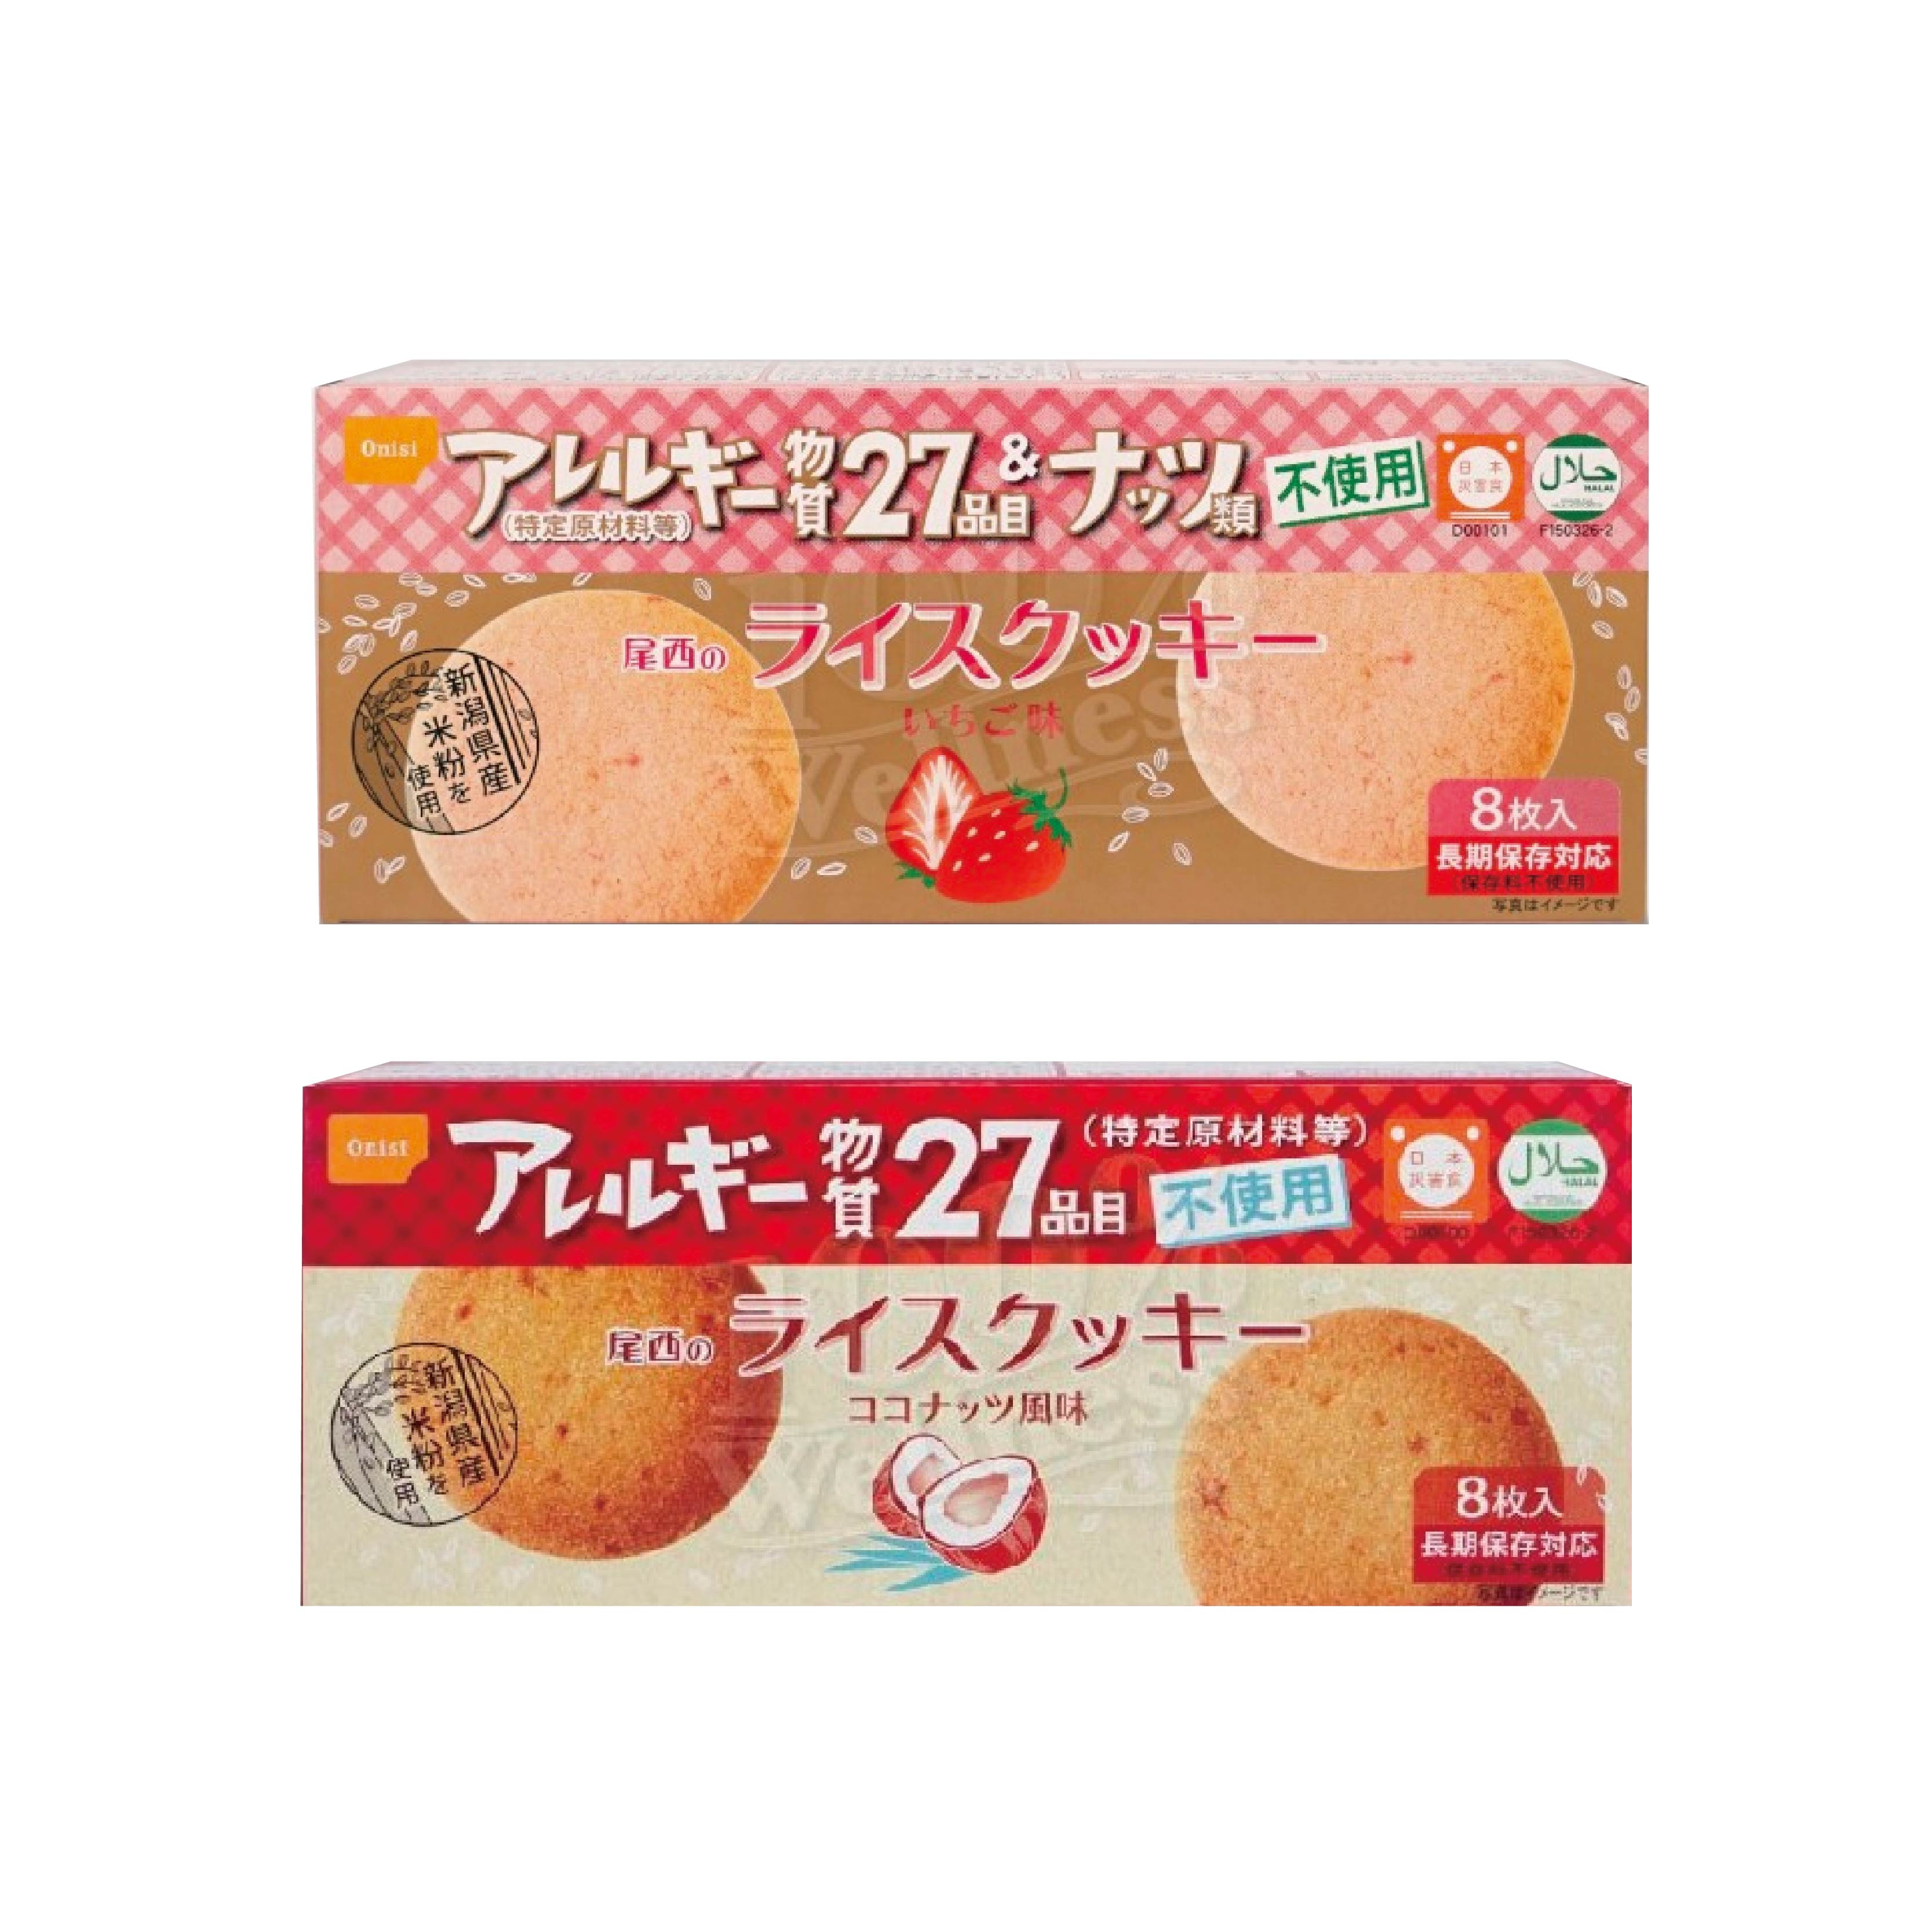 Onisi Gluten-free Non-allergen Rice cookie [48g]